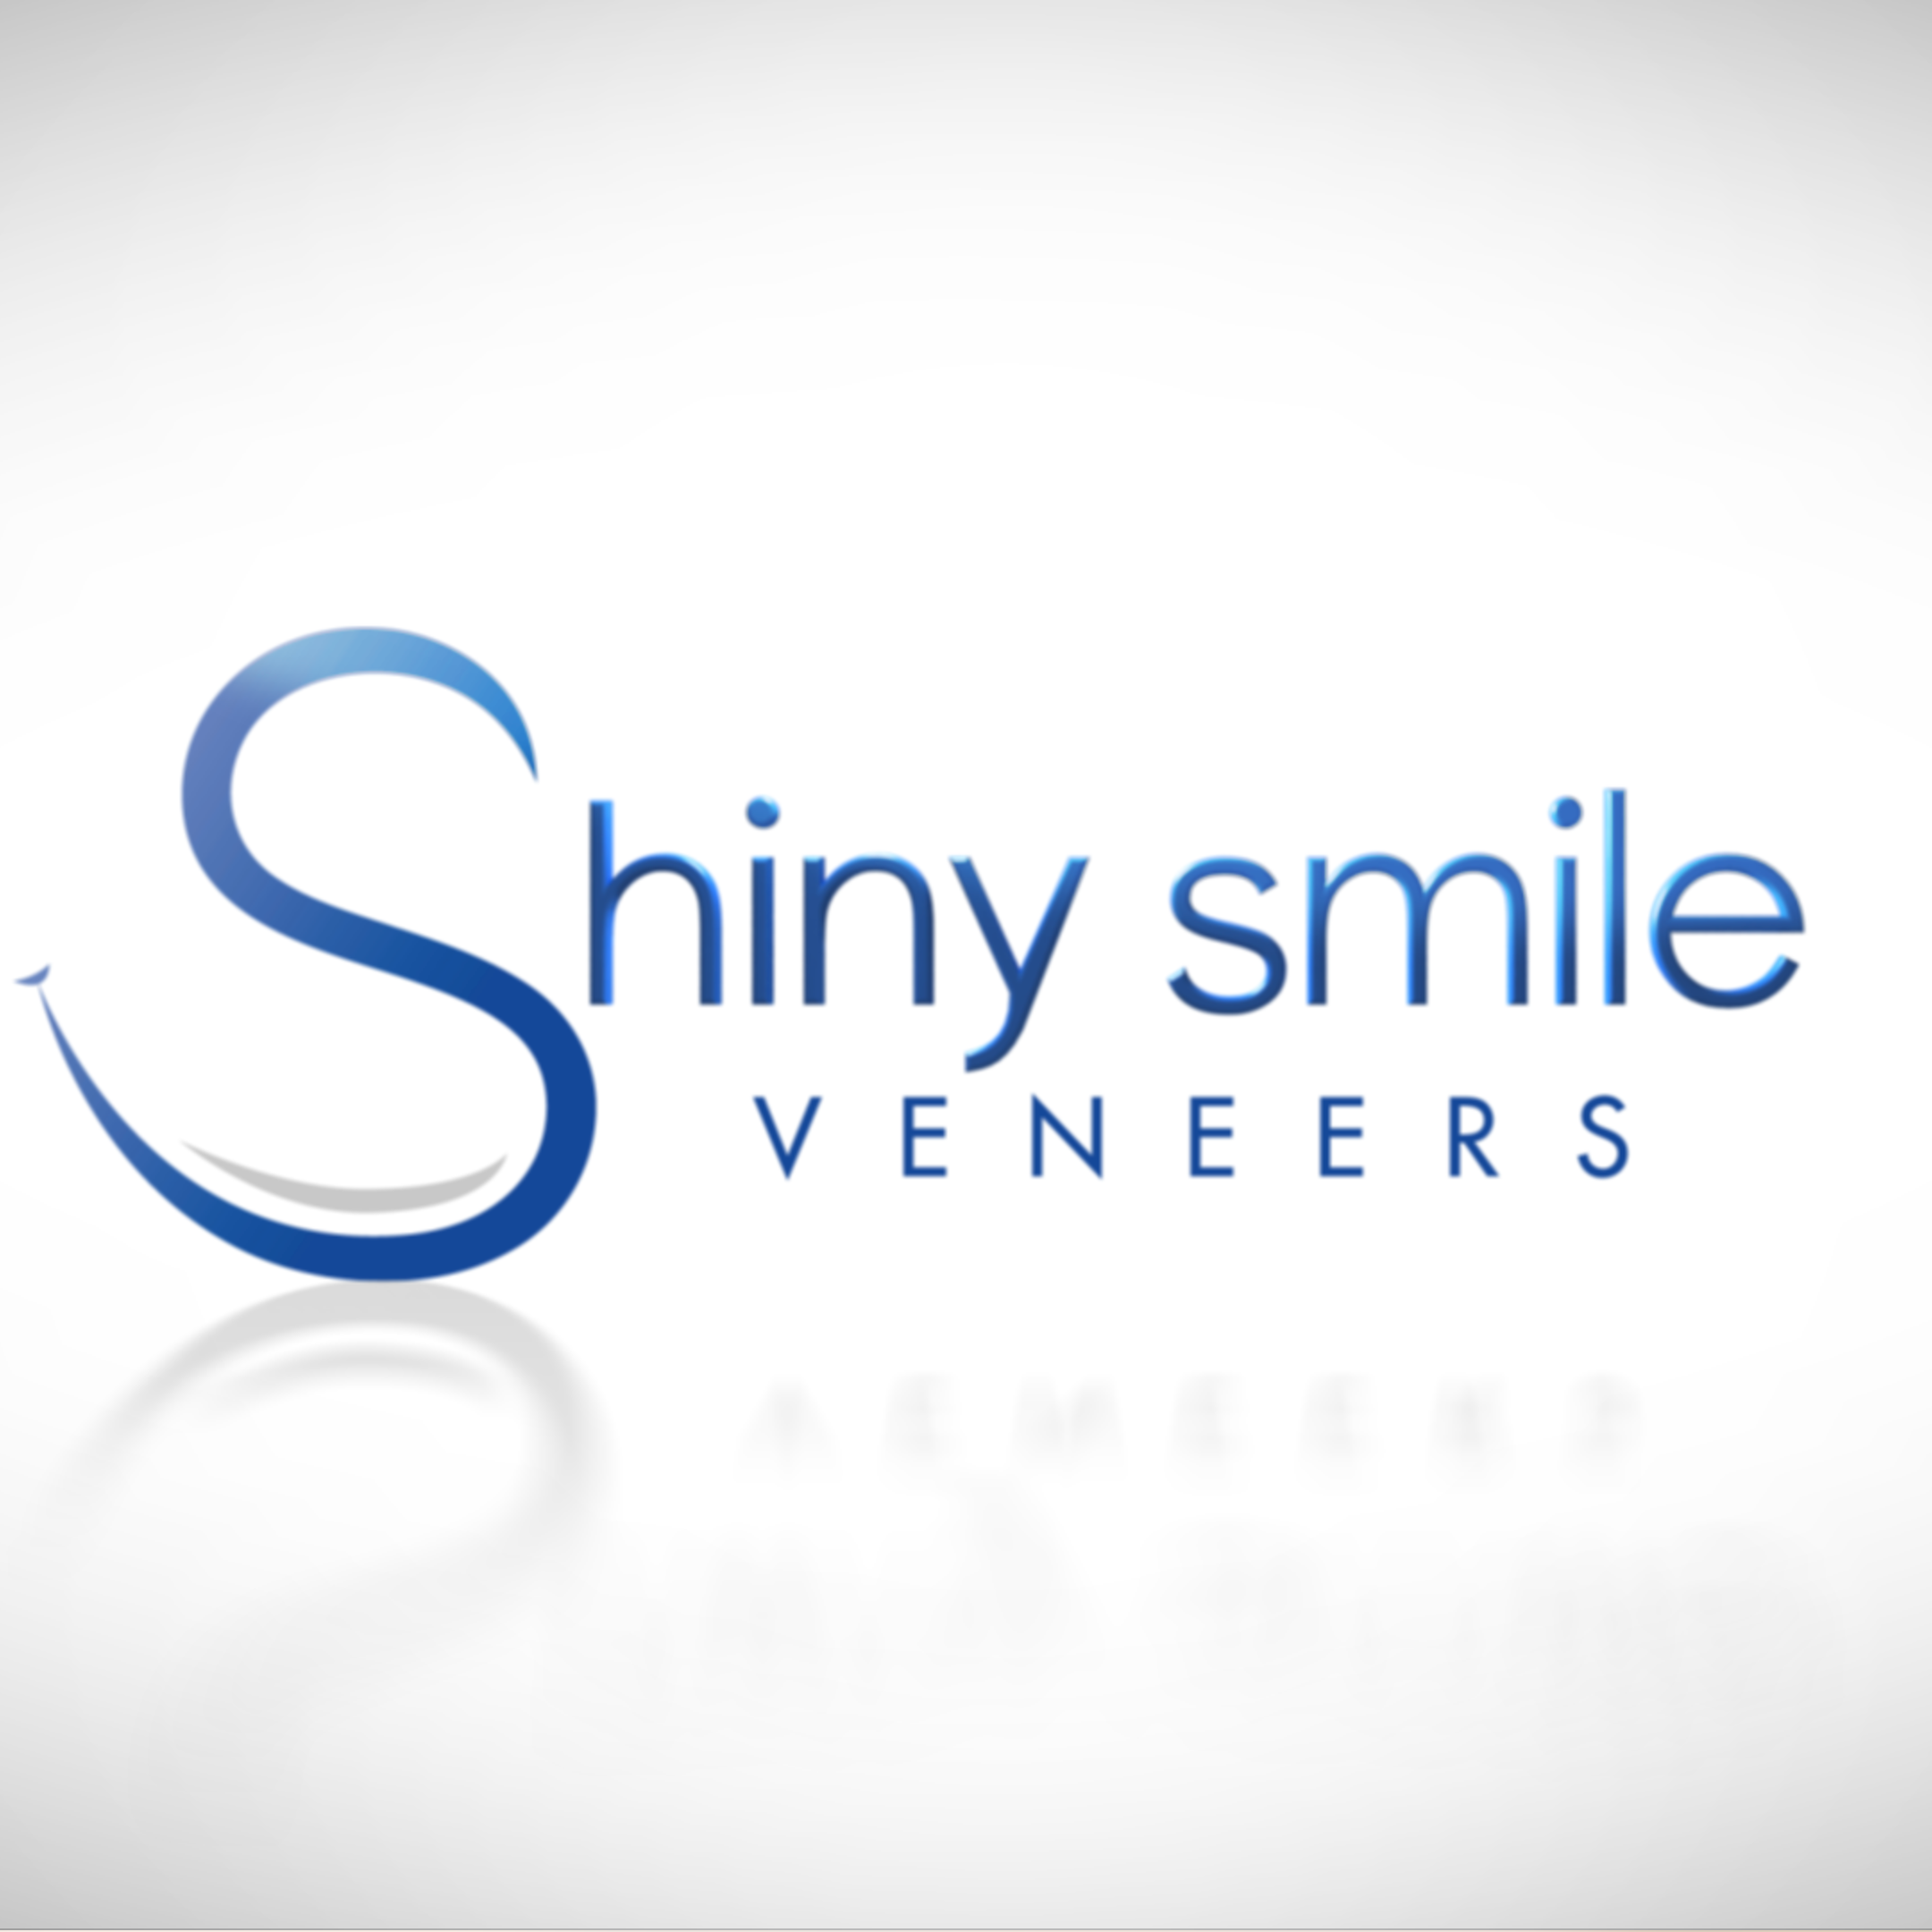 shiny smile veneers